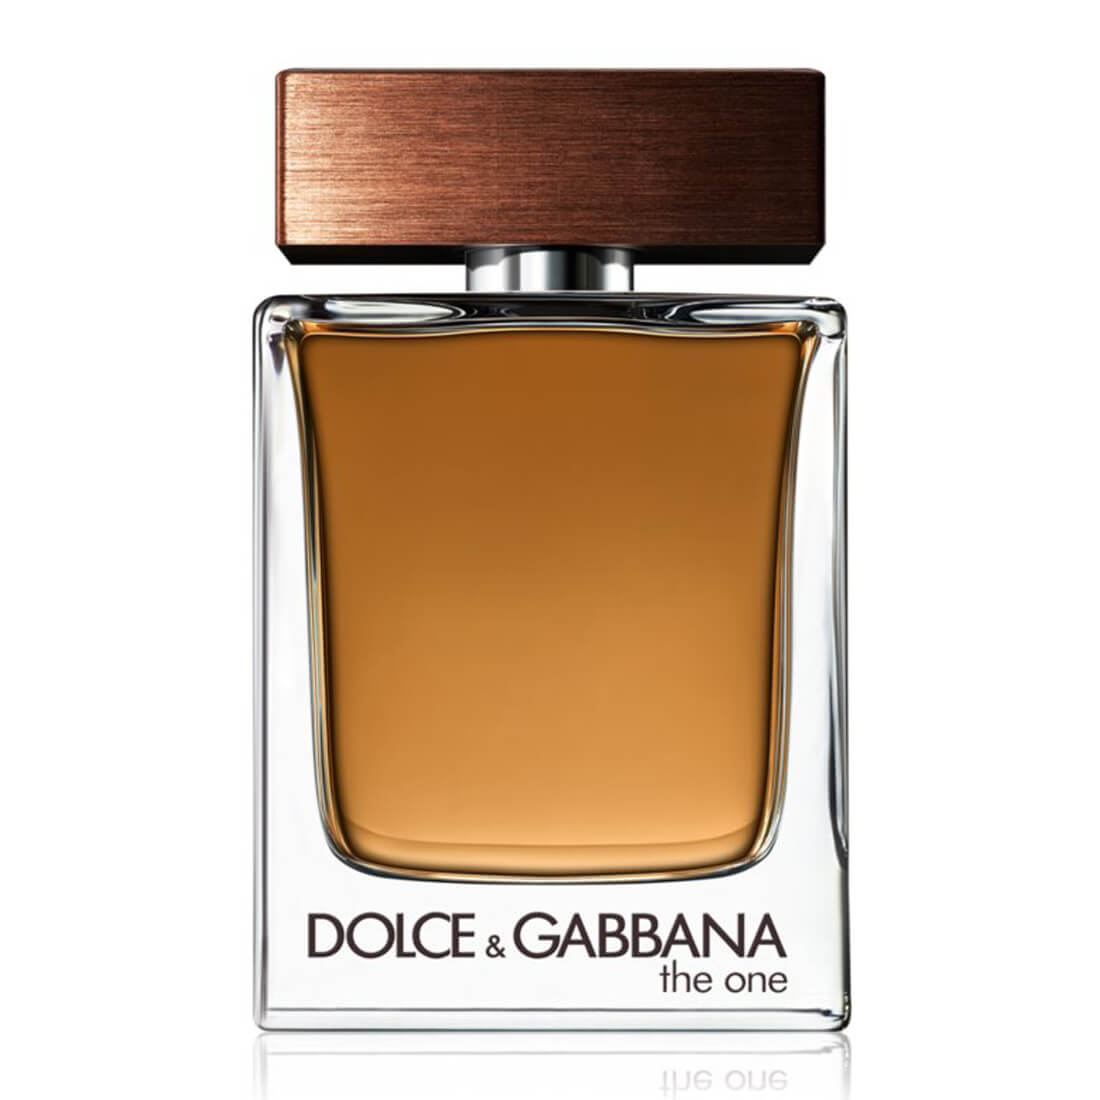 Dolce & Gabbana the One Eau De Toilette For Men